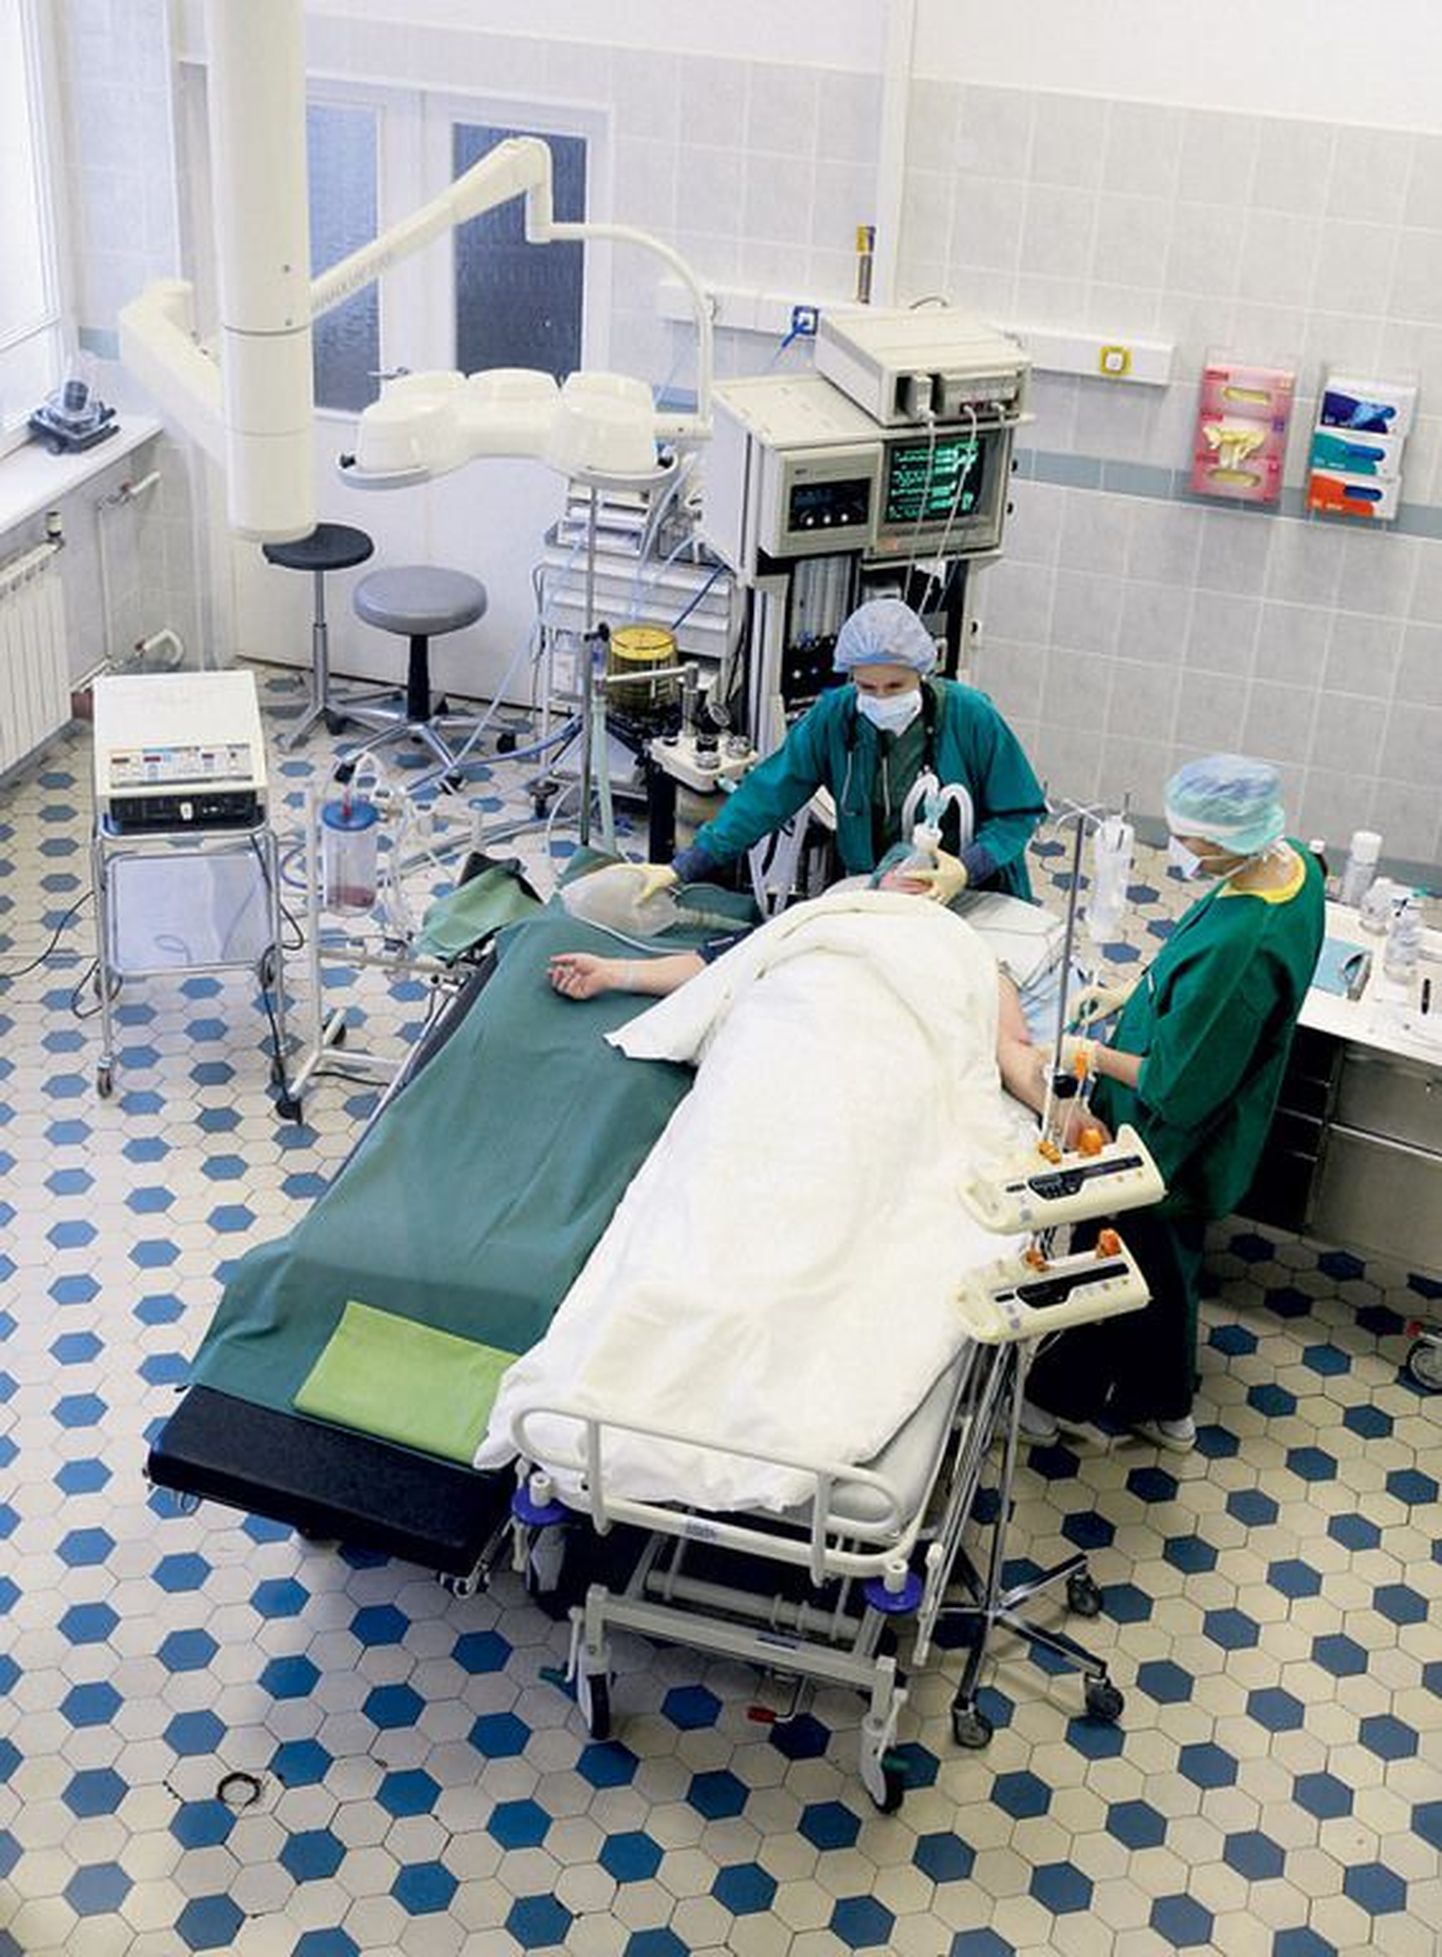 Vaade Tartu Ülikooli närvikliiniku nn looþist alla operatsioonisaali, kus anestesioloog 
dr Kai Savolainen (peatsis) valmistab patsienti ette seljaoperatsiooniks.